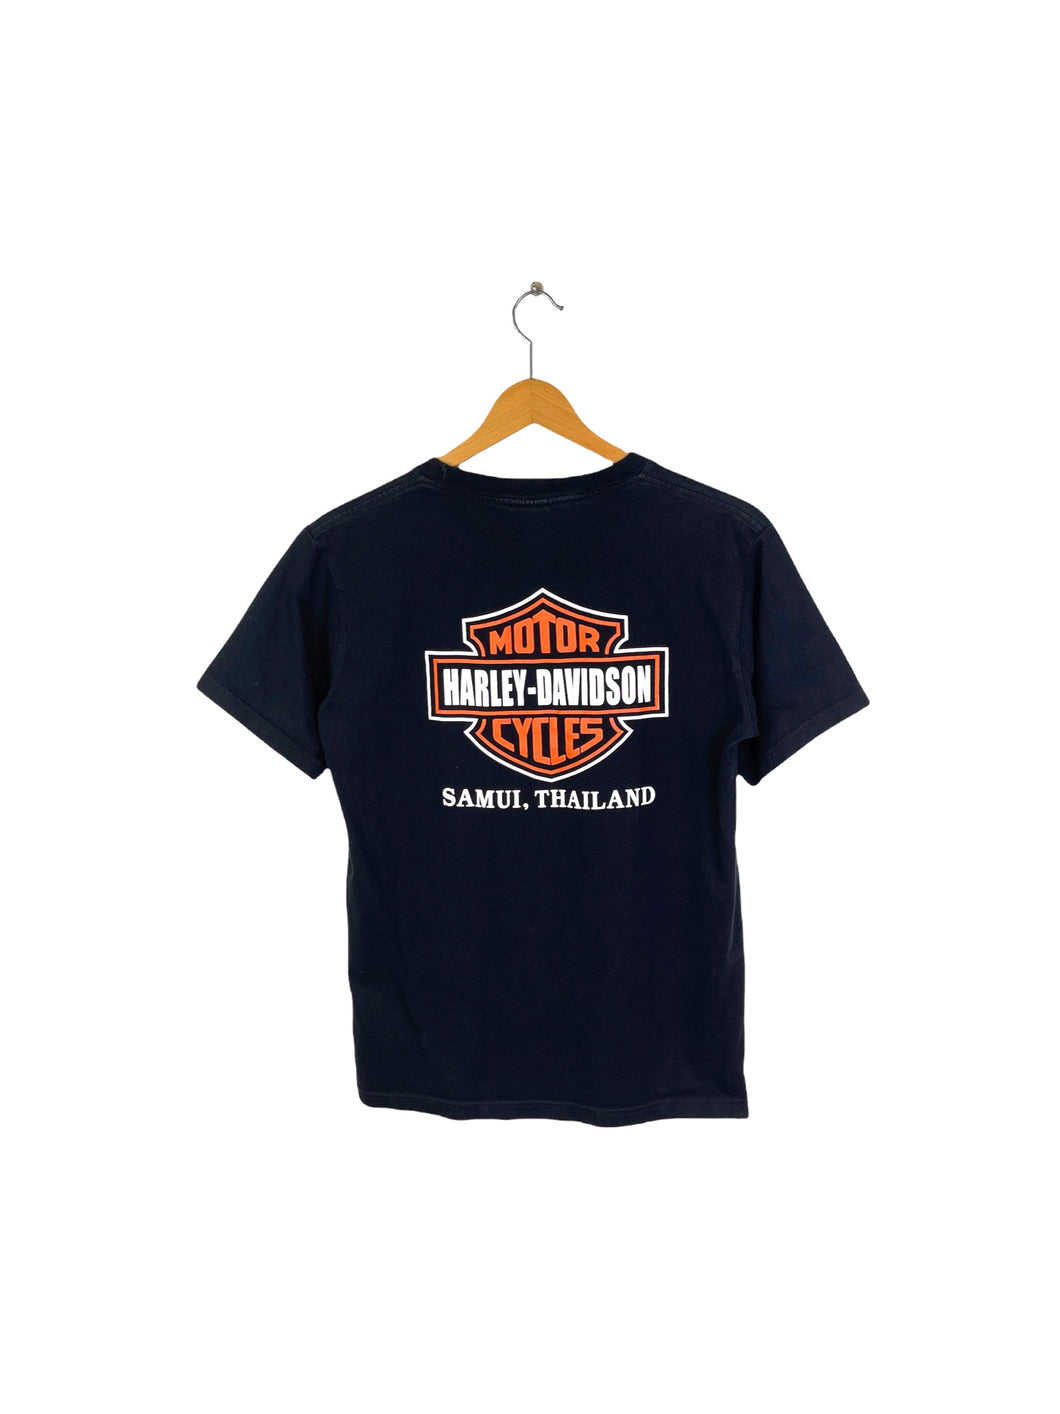 Harley Davidson Tee Shirt - Medium